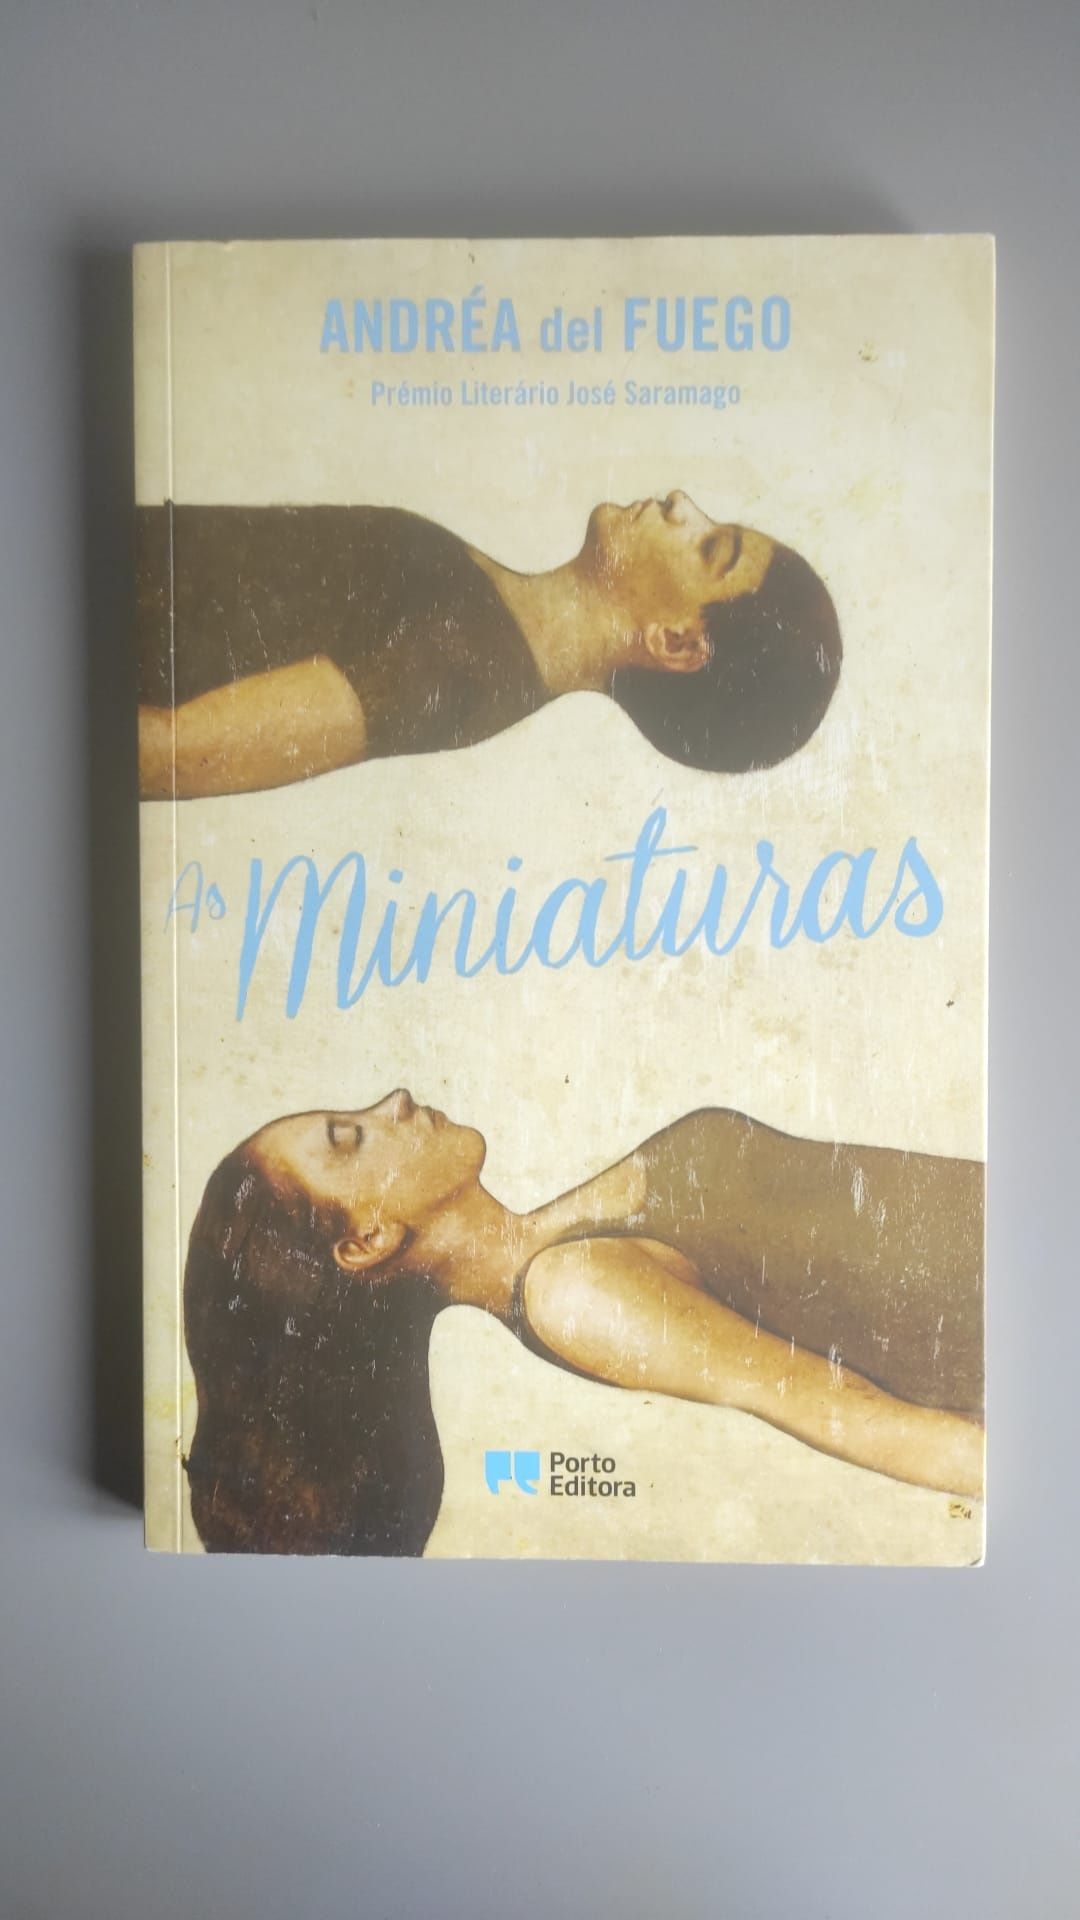 Livro "As miniaturas" de Andrea del Fuego